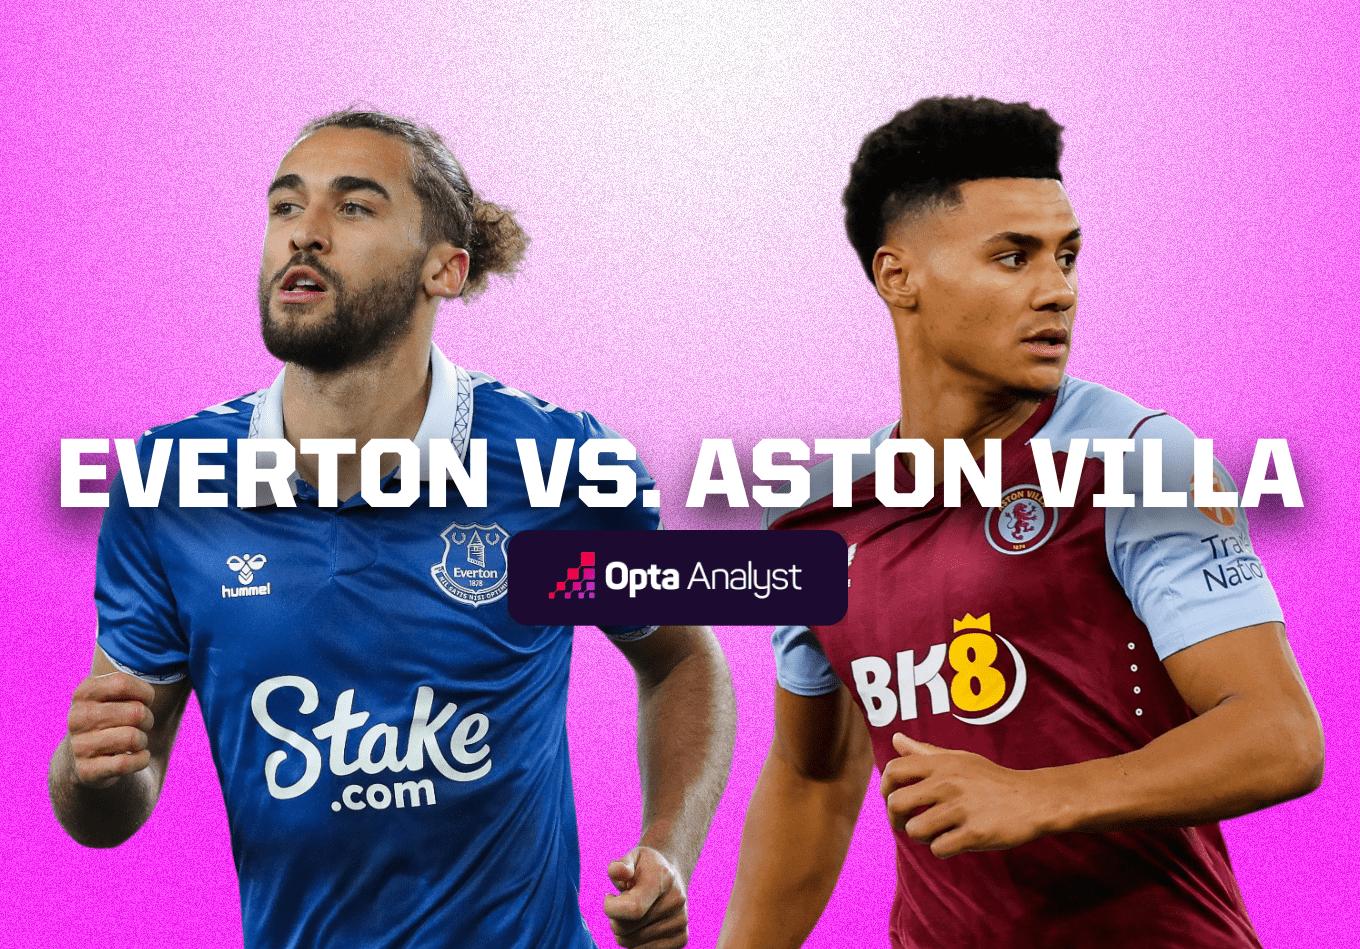 Everton vs Aston Villa: Prediction and Preview